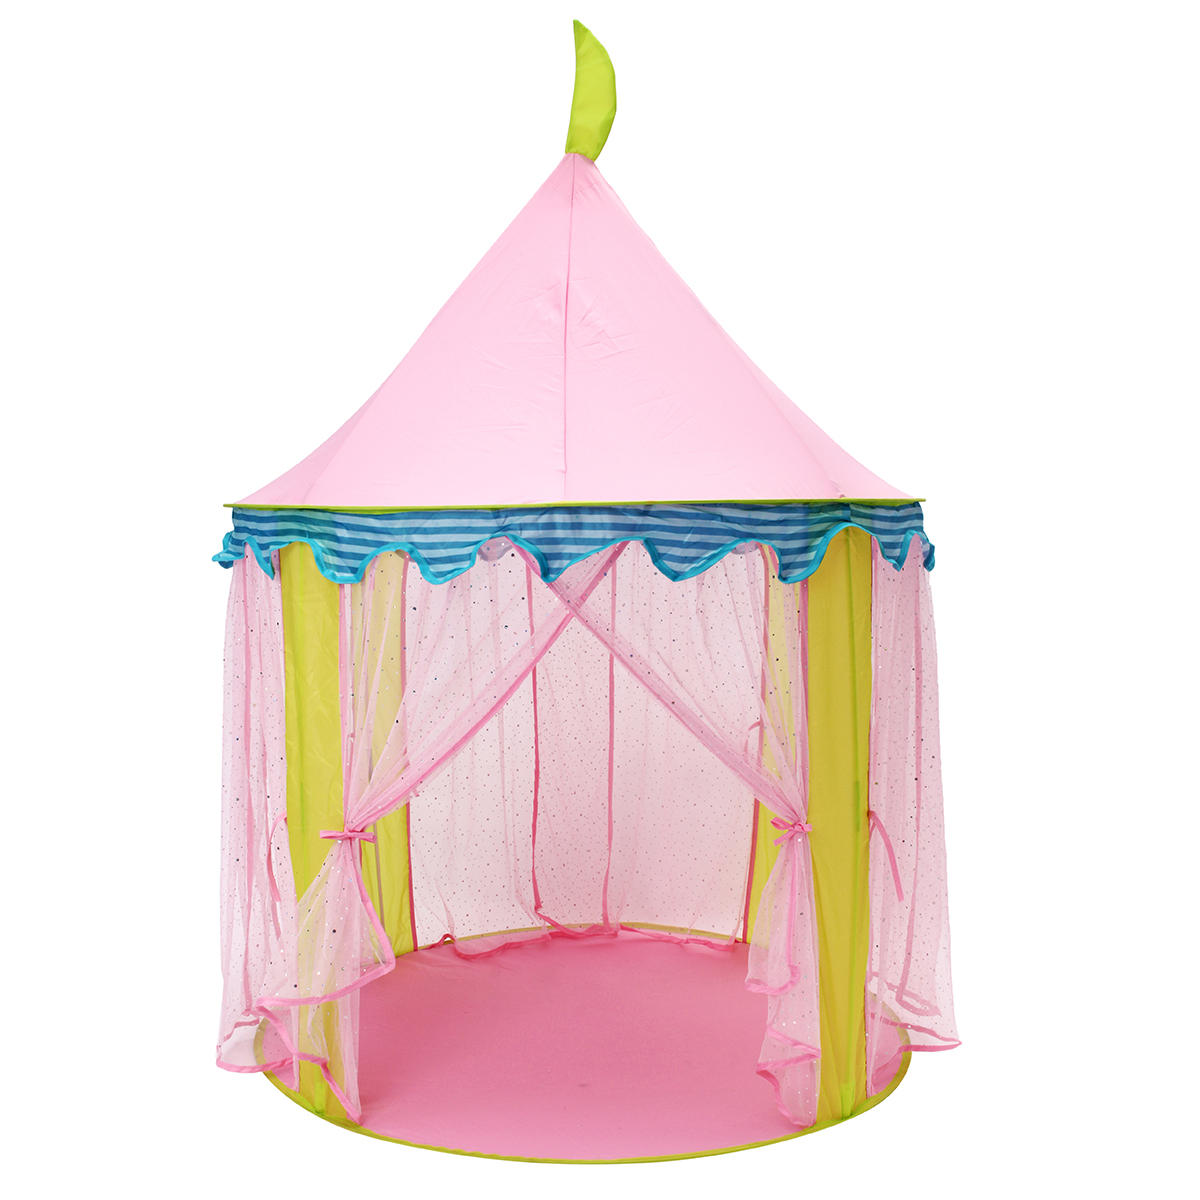 Protable Kids Розовый Принцесса Палатка Складные Дети Игрушка Дом Дети Москито Большой игровой зал